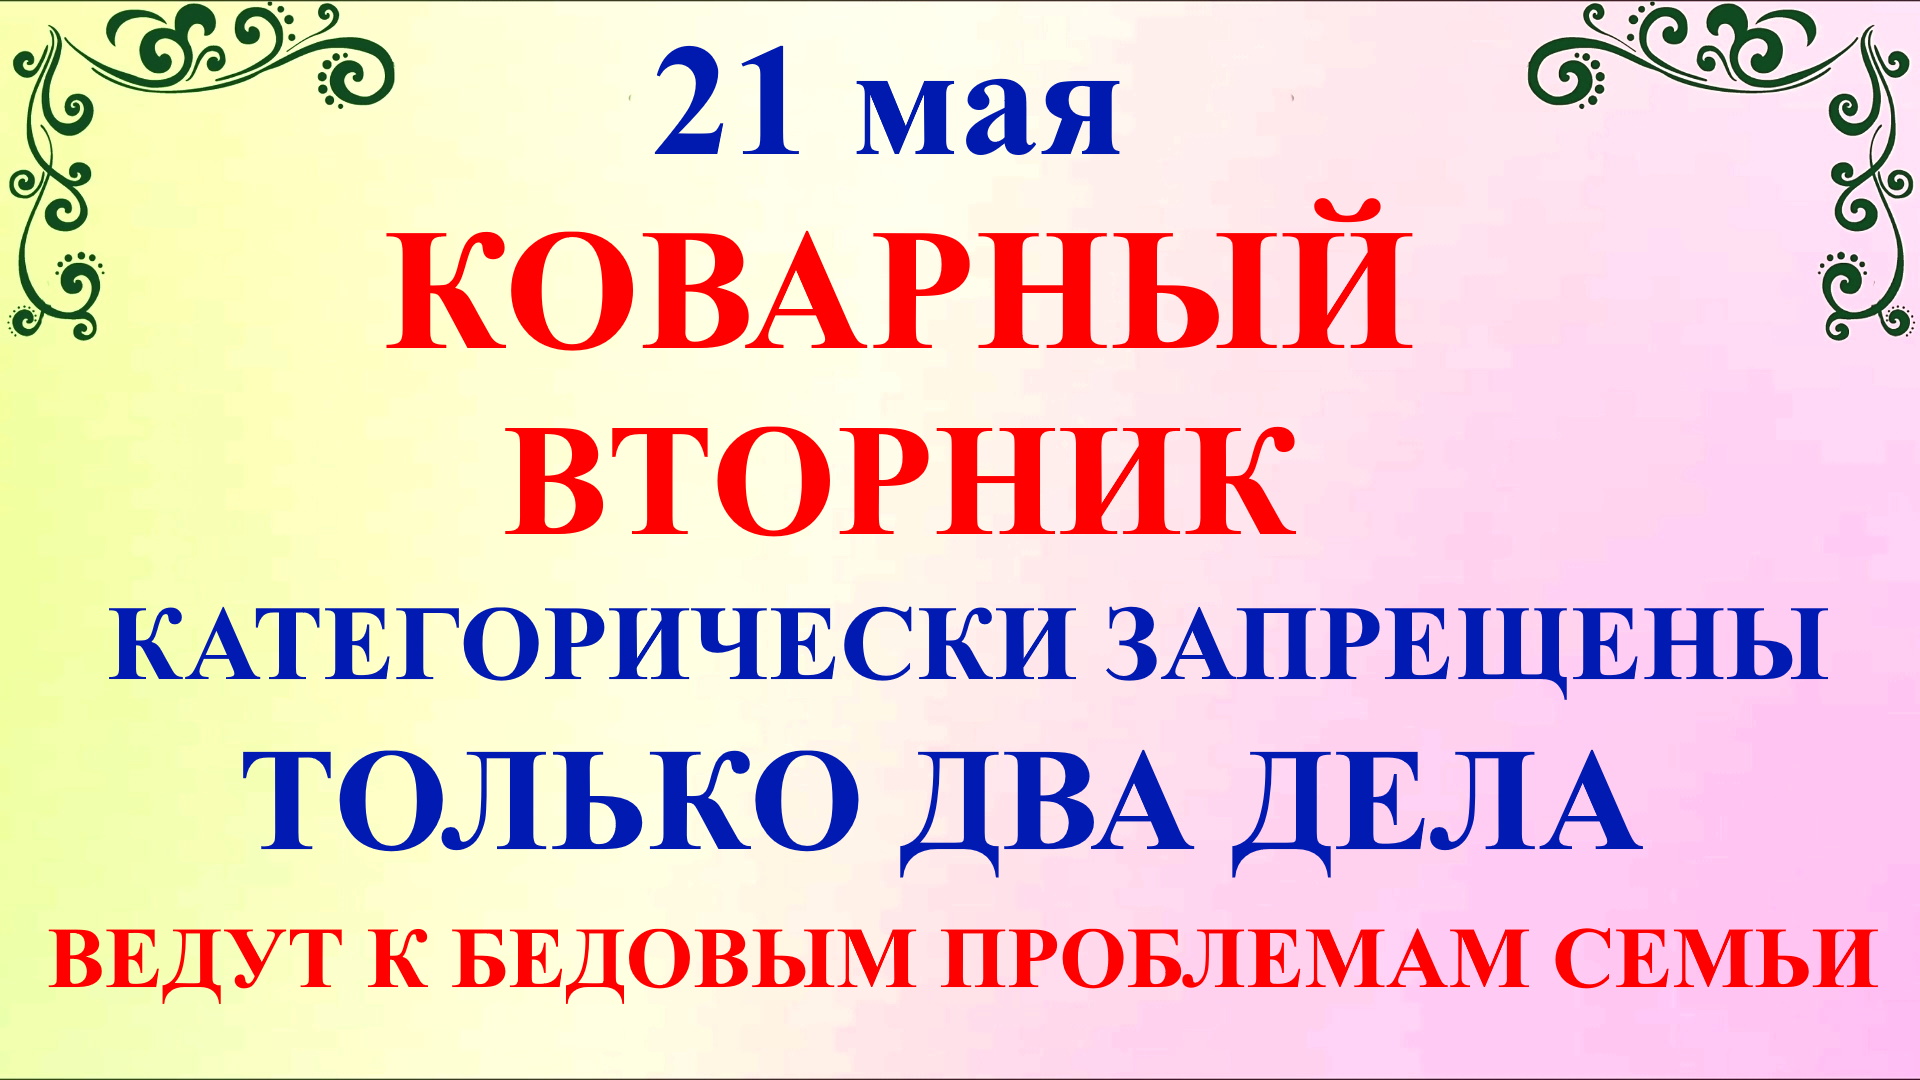 21 мая Иван Богослов. Что нельзя делать в Иванов День 21 мая. Народные традиции и приметы